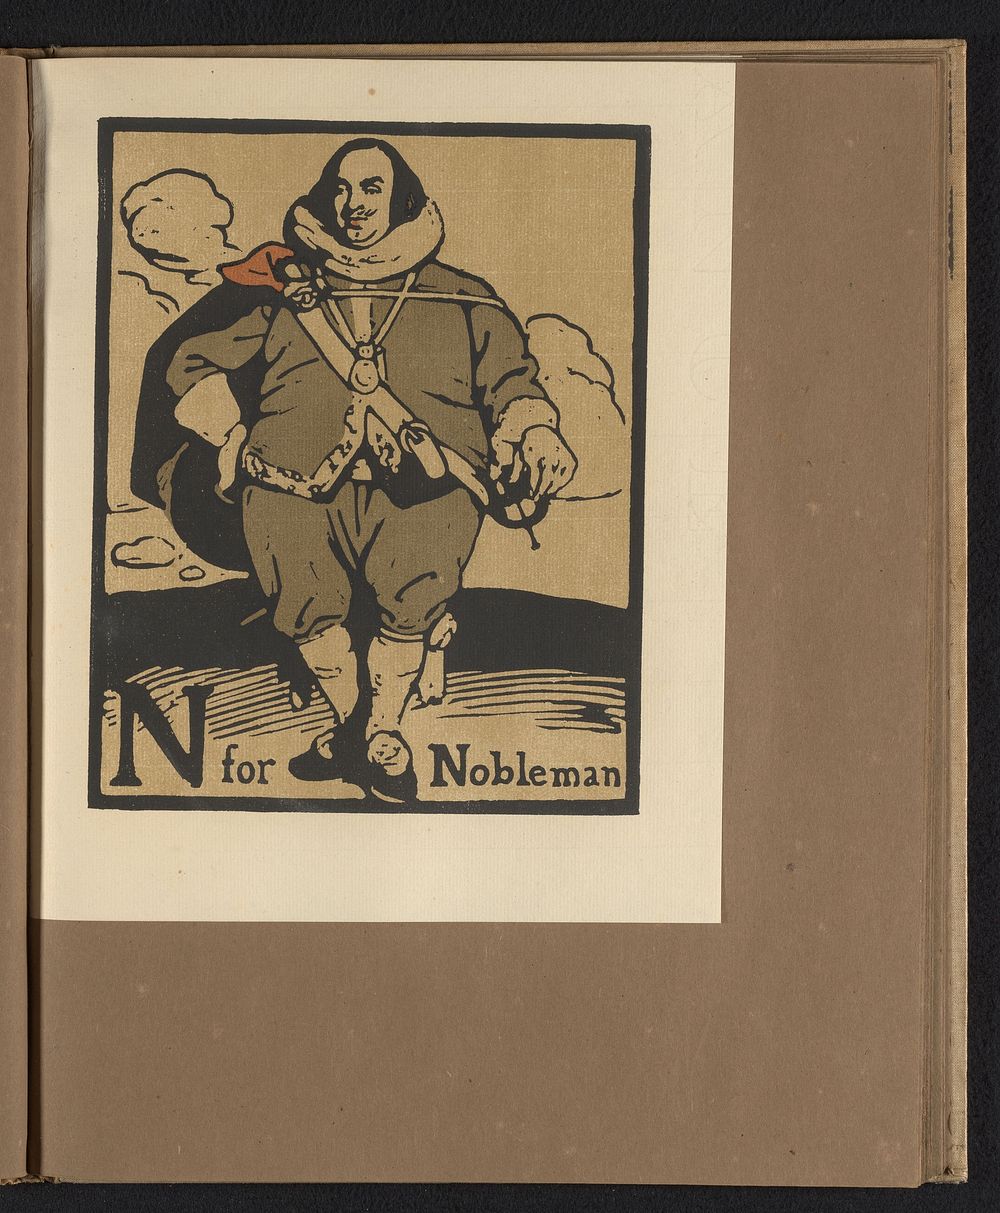 N is for Nobleman (1898) by William Nicholson and William Heinemann